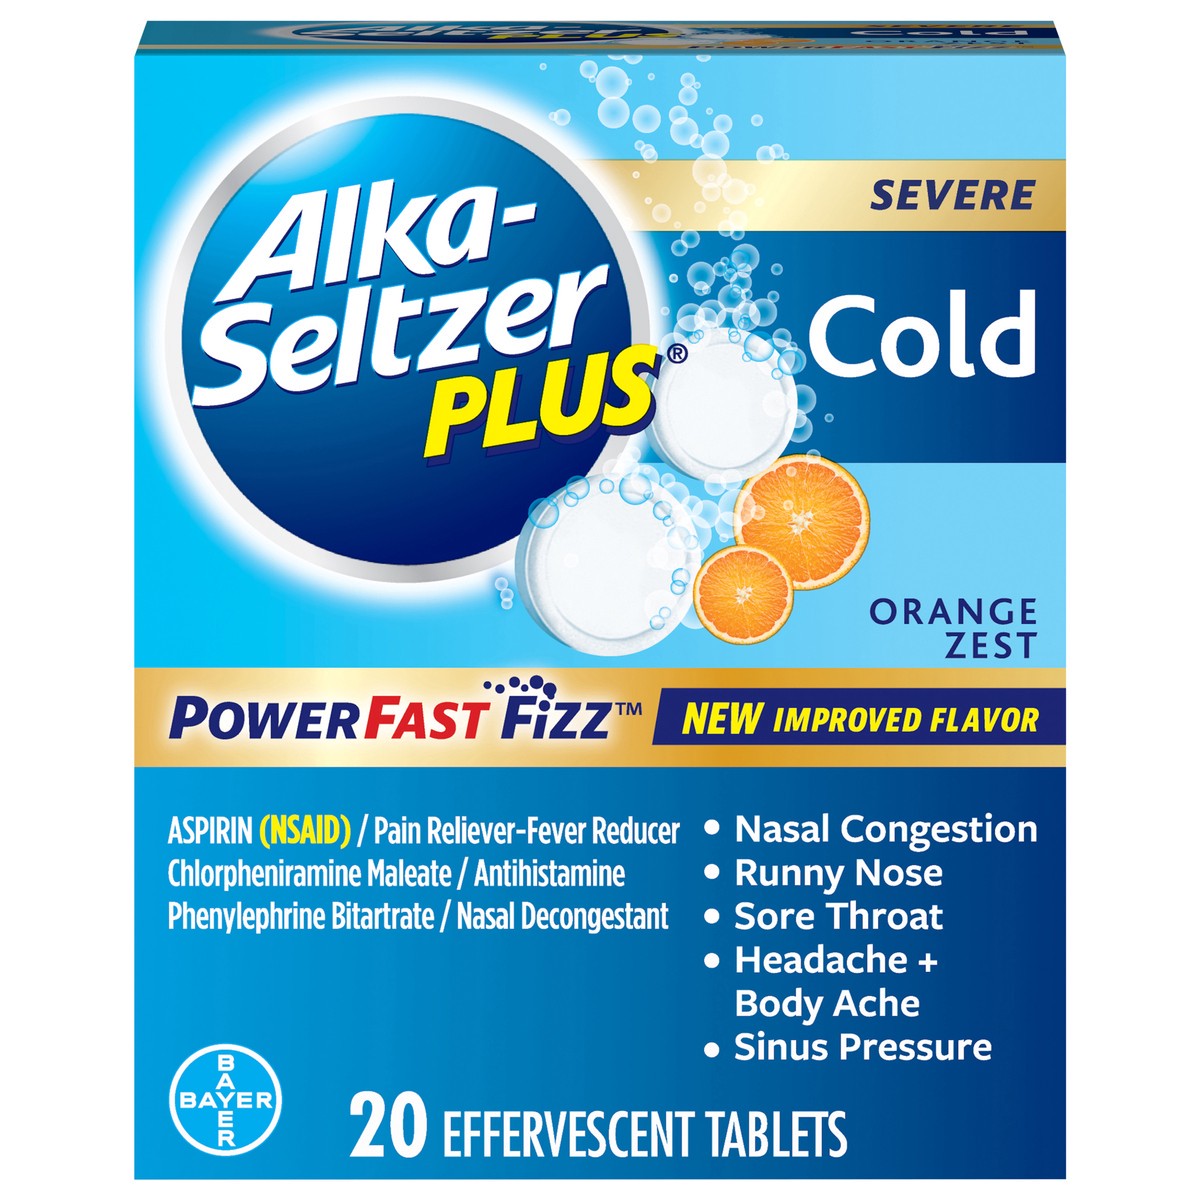 slide 1 of 1, Alka-Seltzer Plus Orange Zest Severe Cold Relief Tablets, 20 ct